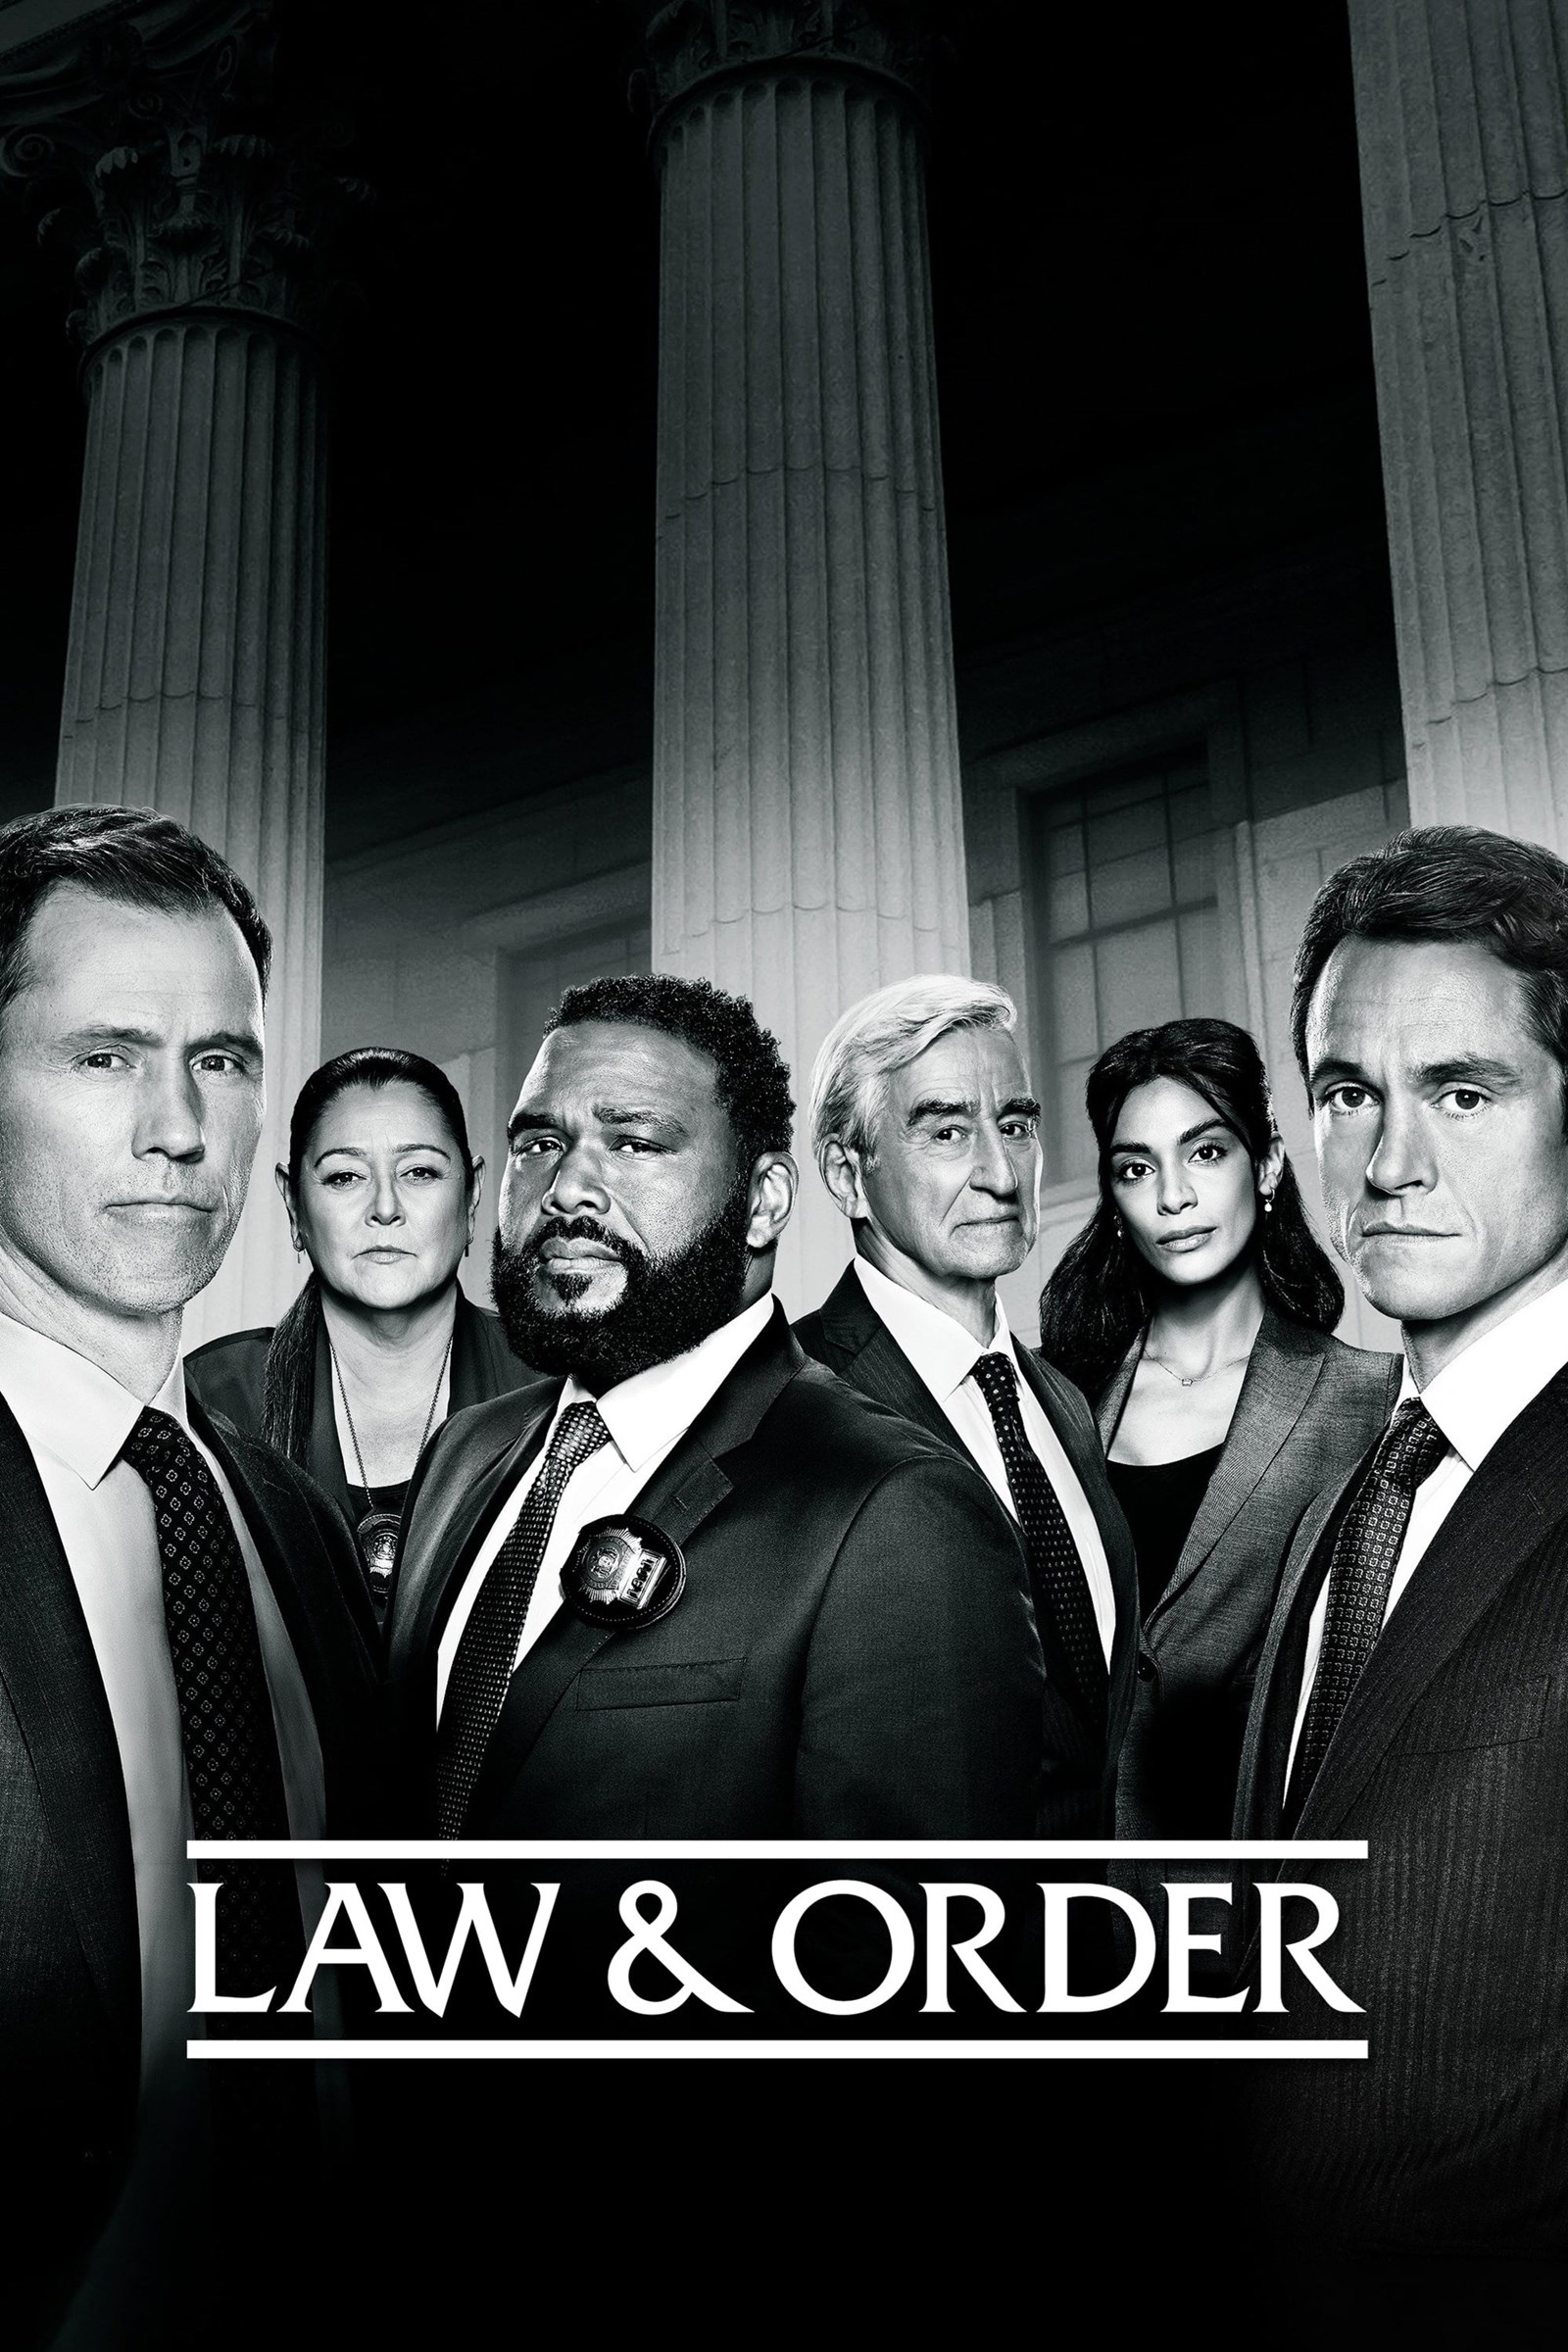 مشاهدة مسلسل Law & Order الموسم 21 الحادي والعشرون الحلقة 3 الثالثة مترجمة